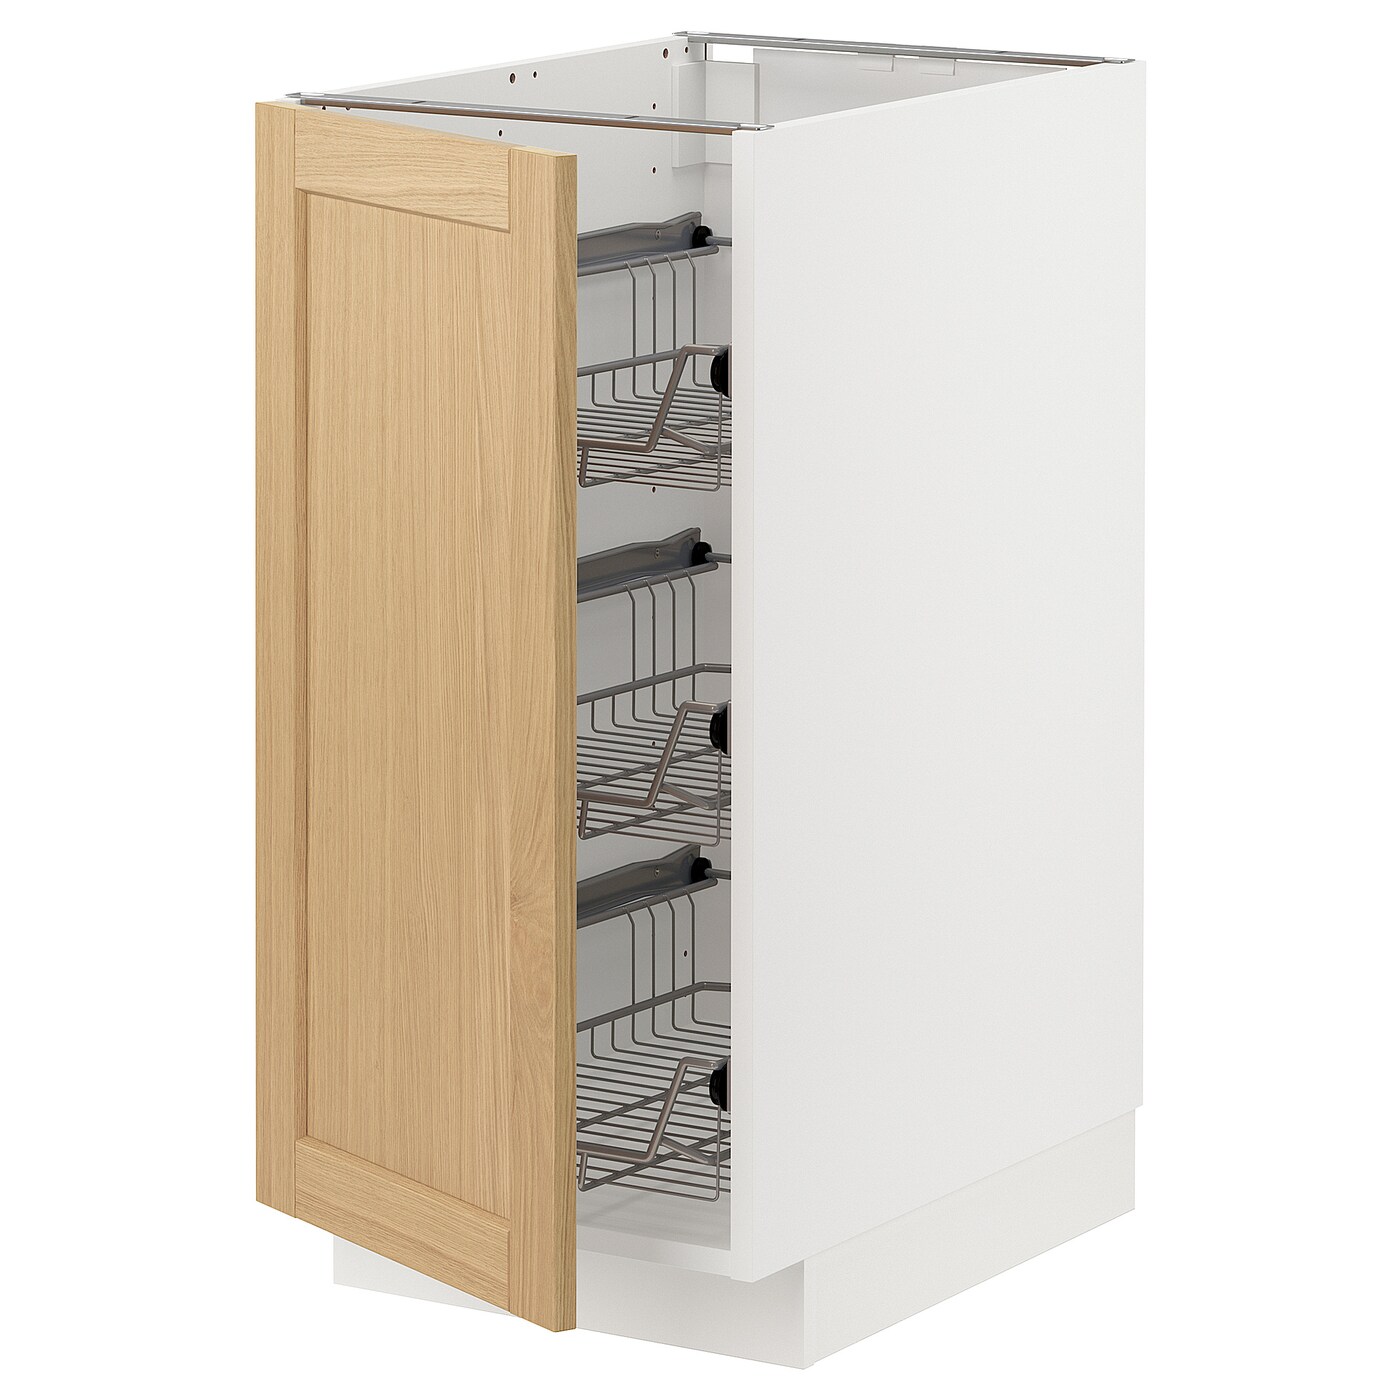 Напольный шкаф - METOD IKEA/ МЕТОД ИКЕА,  40х60 см, белый/под беленый дуб